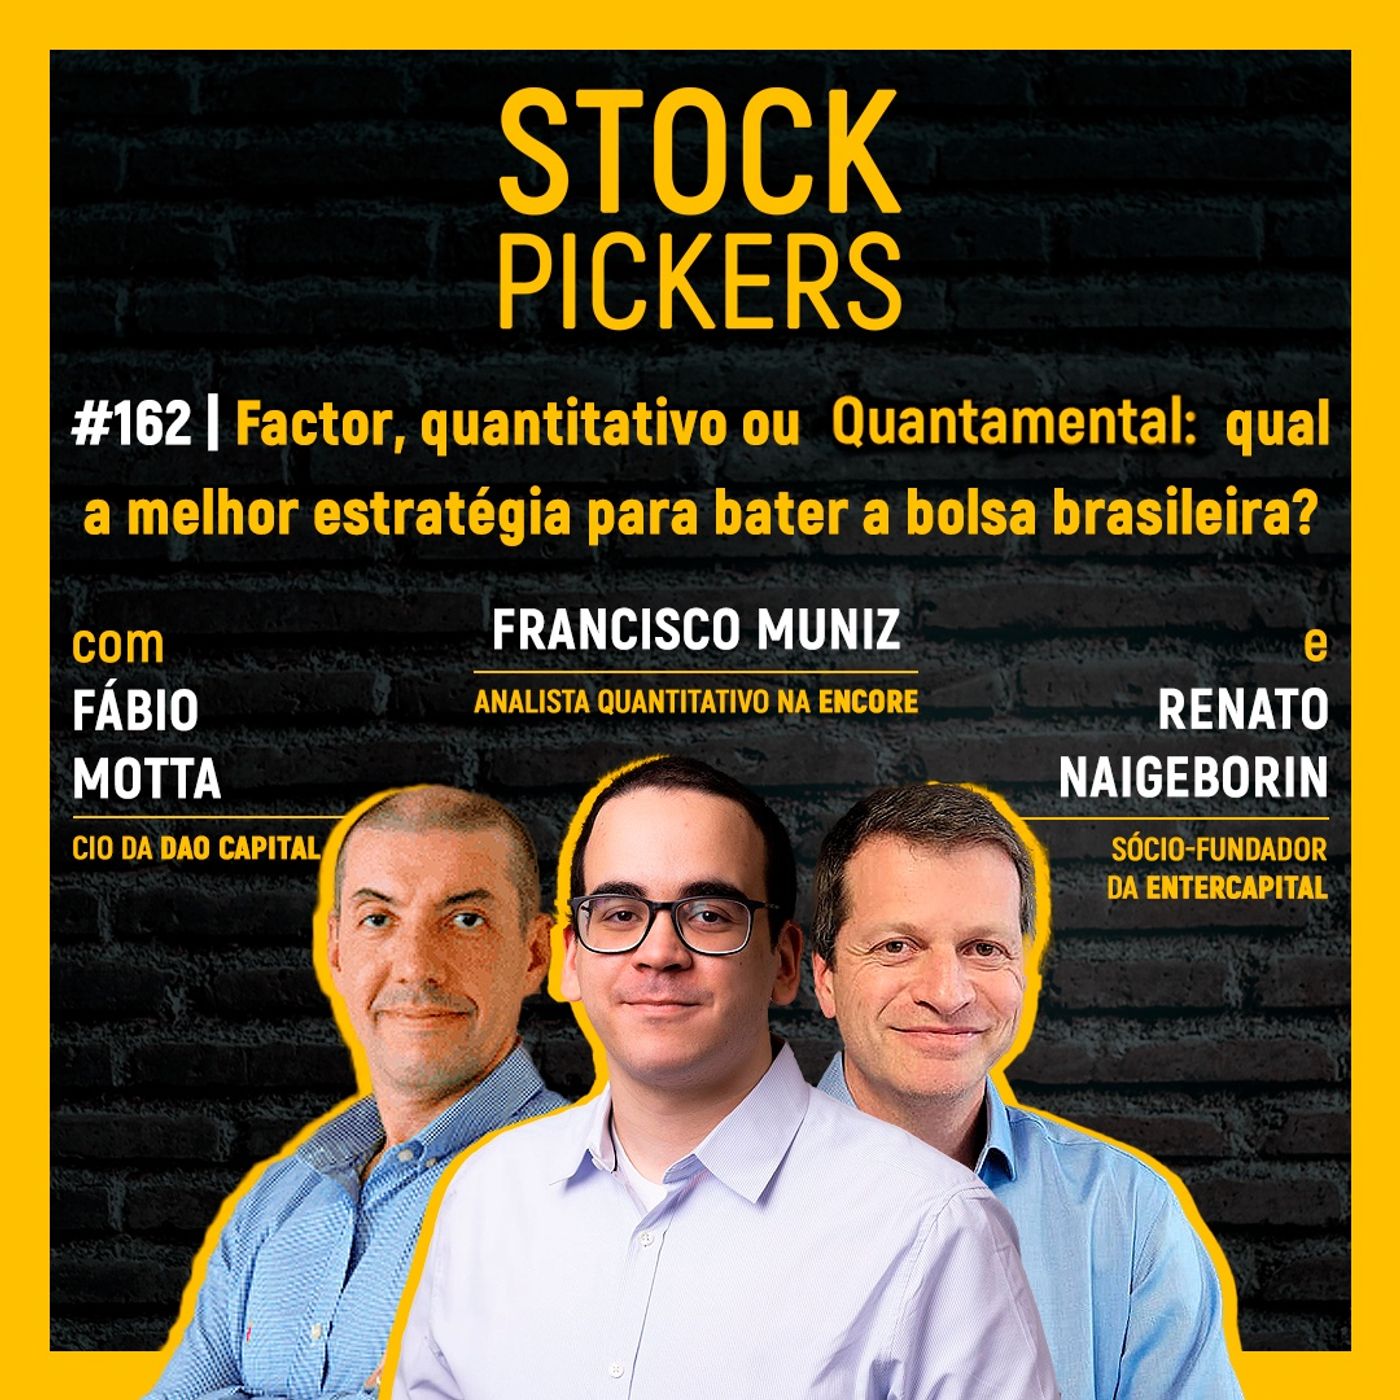 #162 Factor, quantitativo ou Quantamental: qual a melhor estratégia para bater a bolsa brasileira?